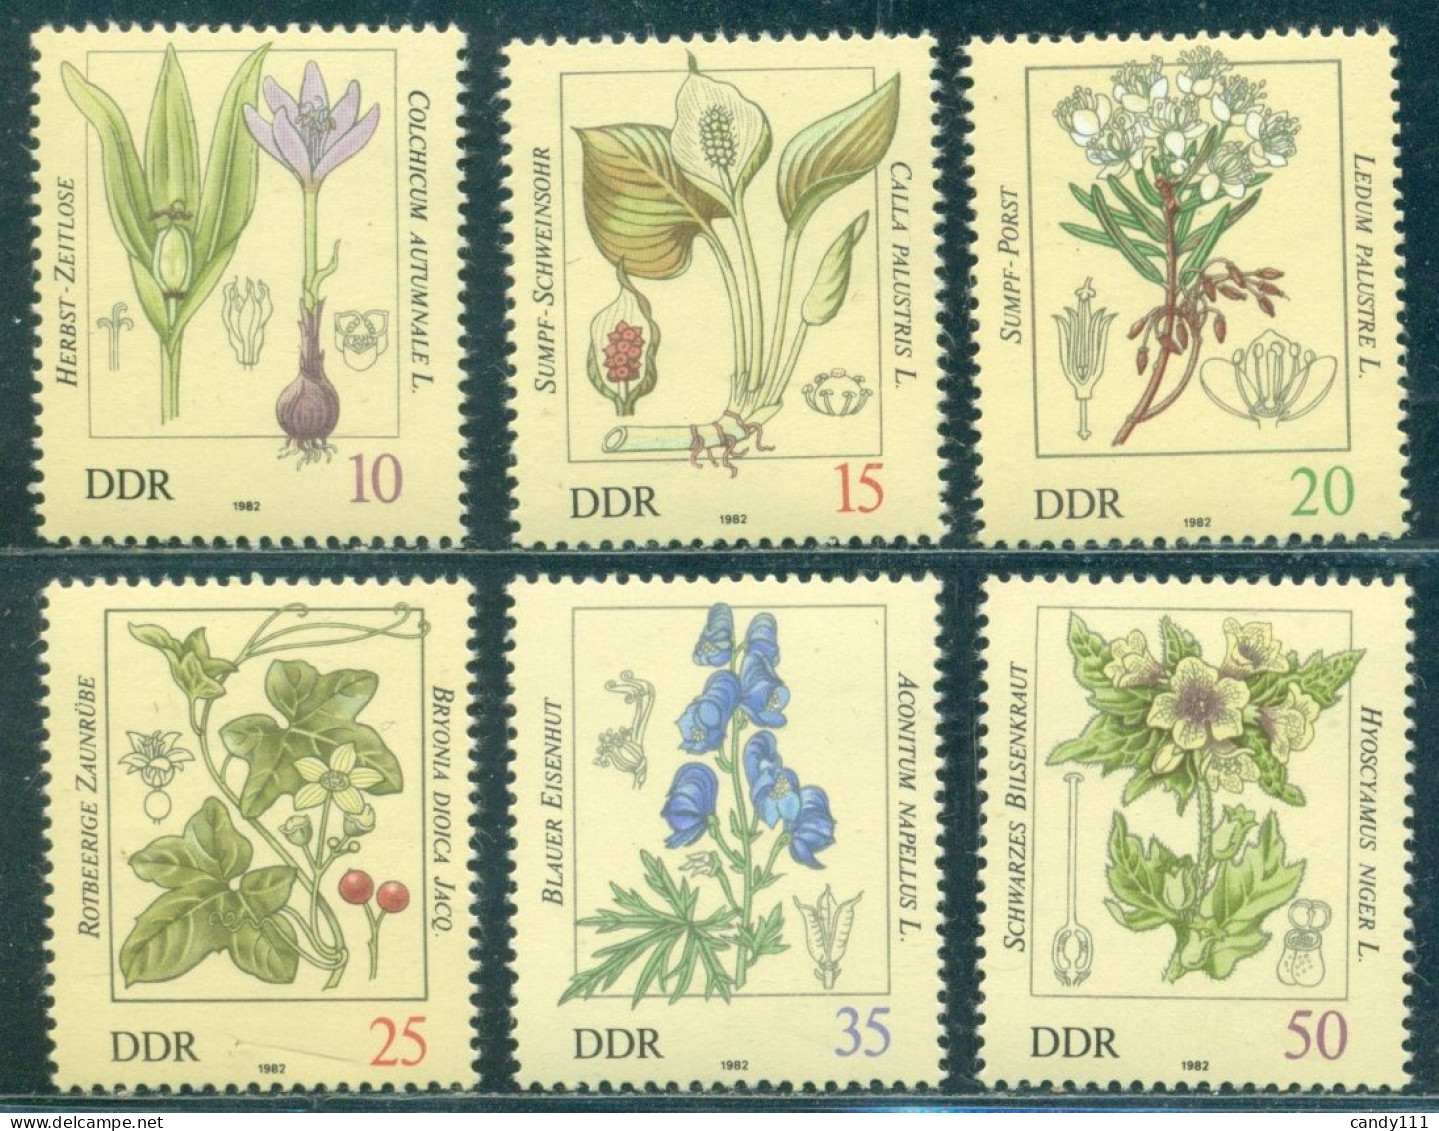 1982 Poisonous Plants,autumn Crocus,devil's Helmet,henbane,bryony,DDR,2691,MNH - Giftige Pflanzen